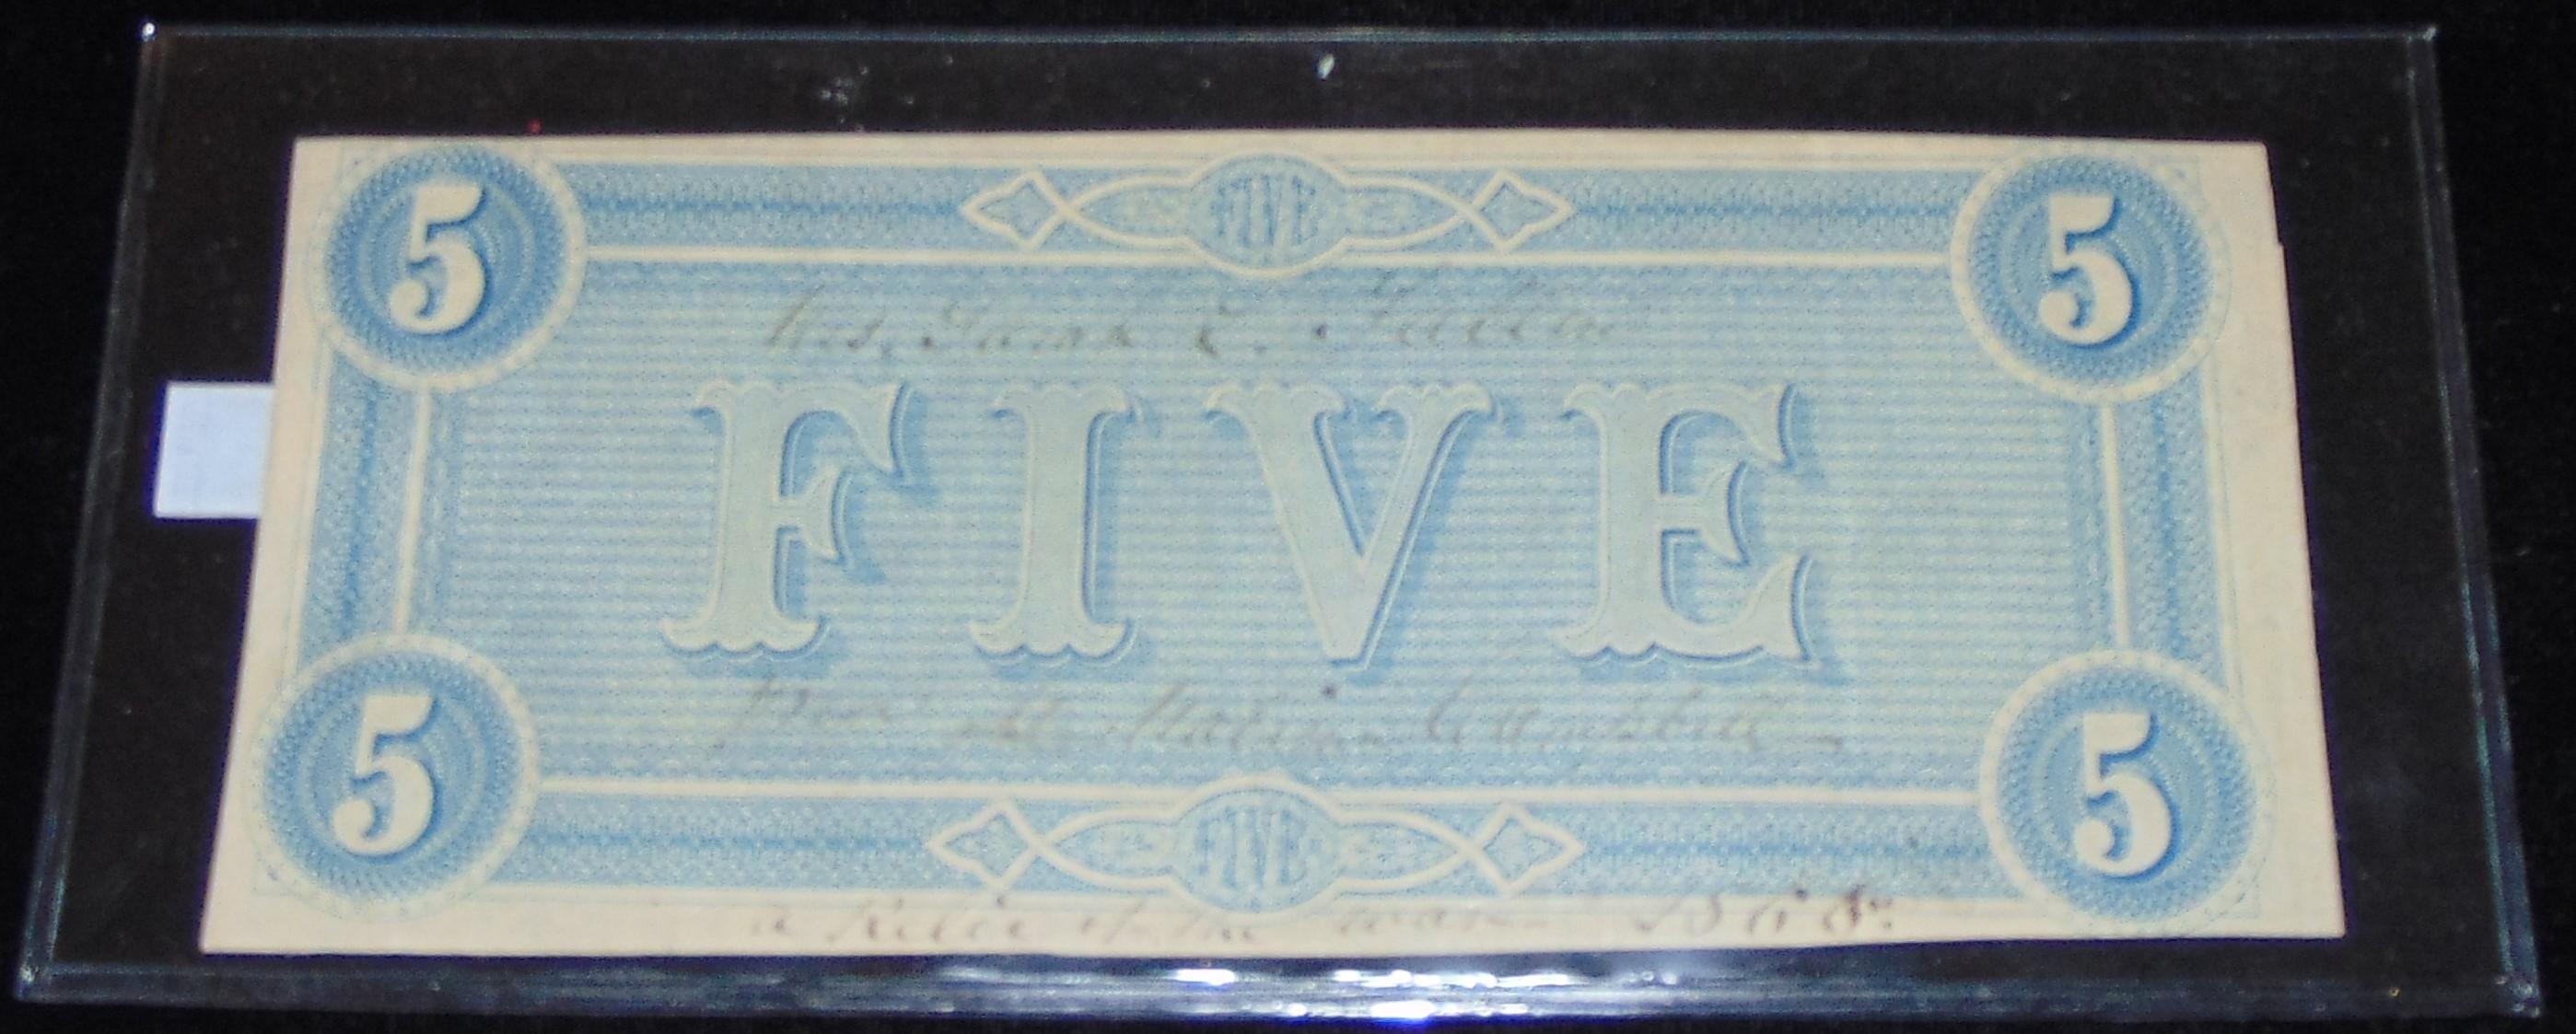 February 1864 $5 Confederate Note.